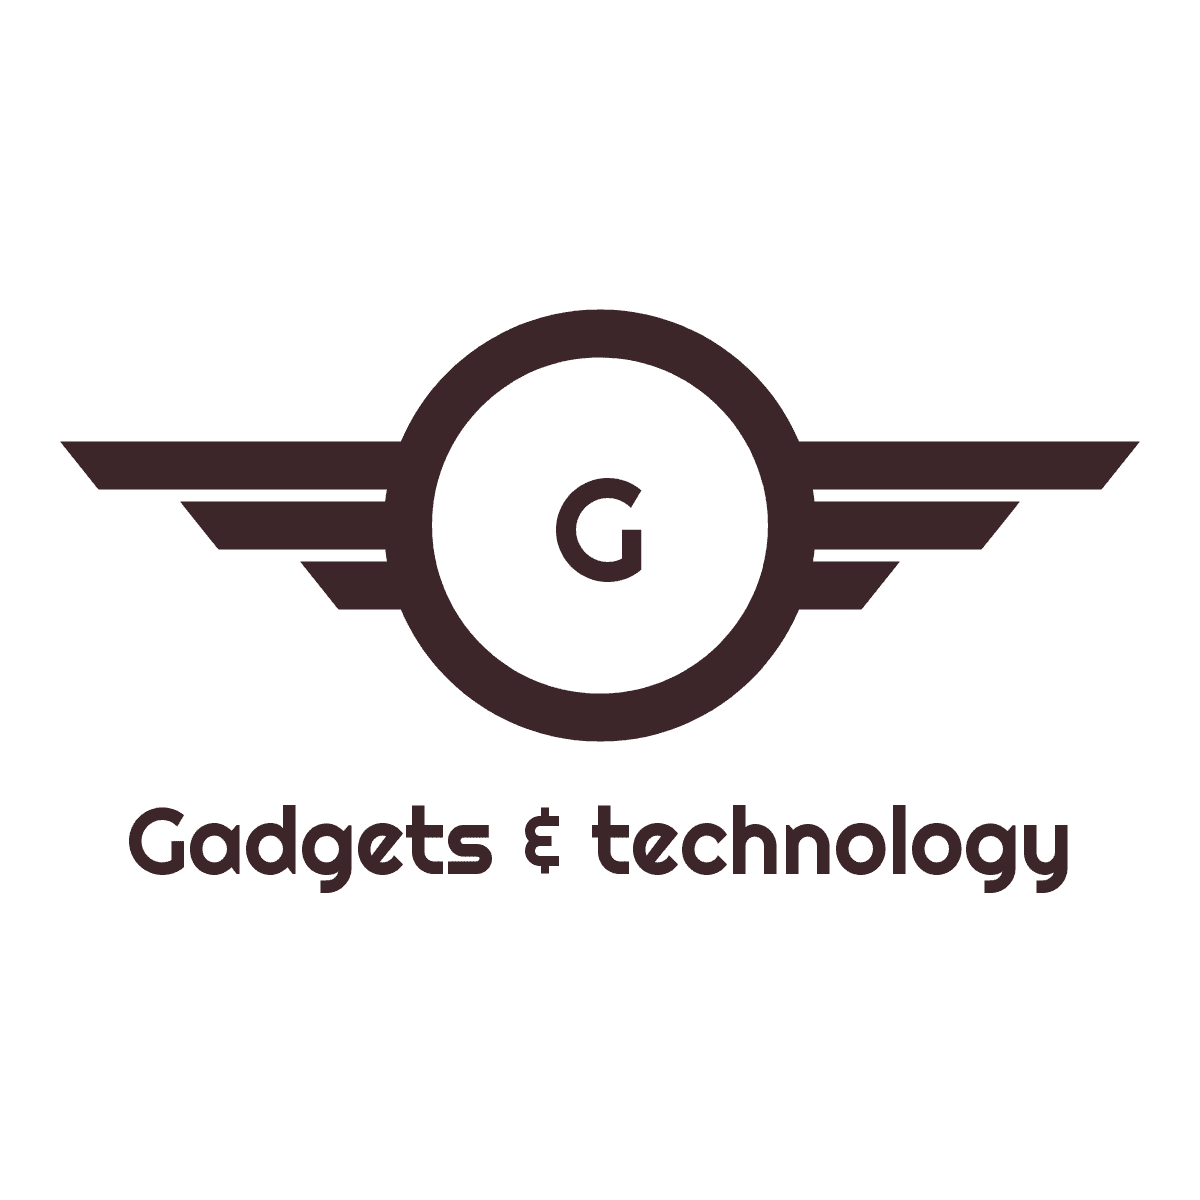 Gadgets & Technology